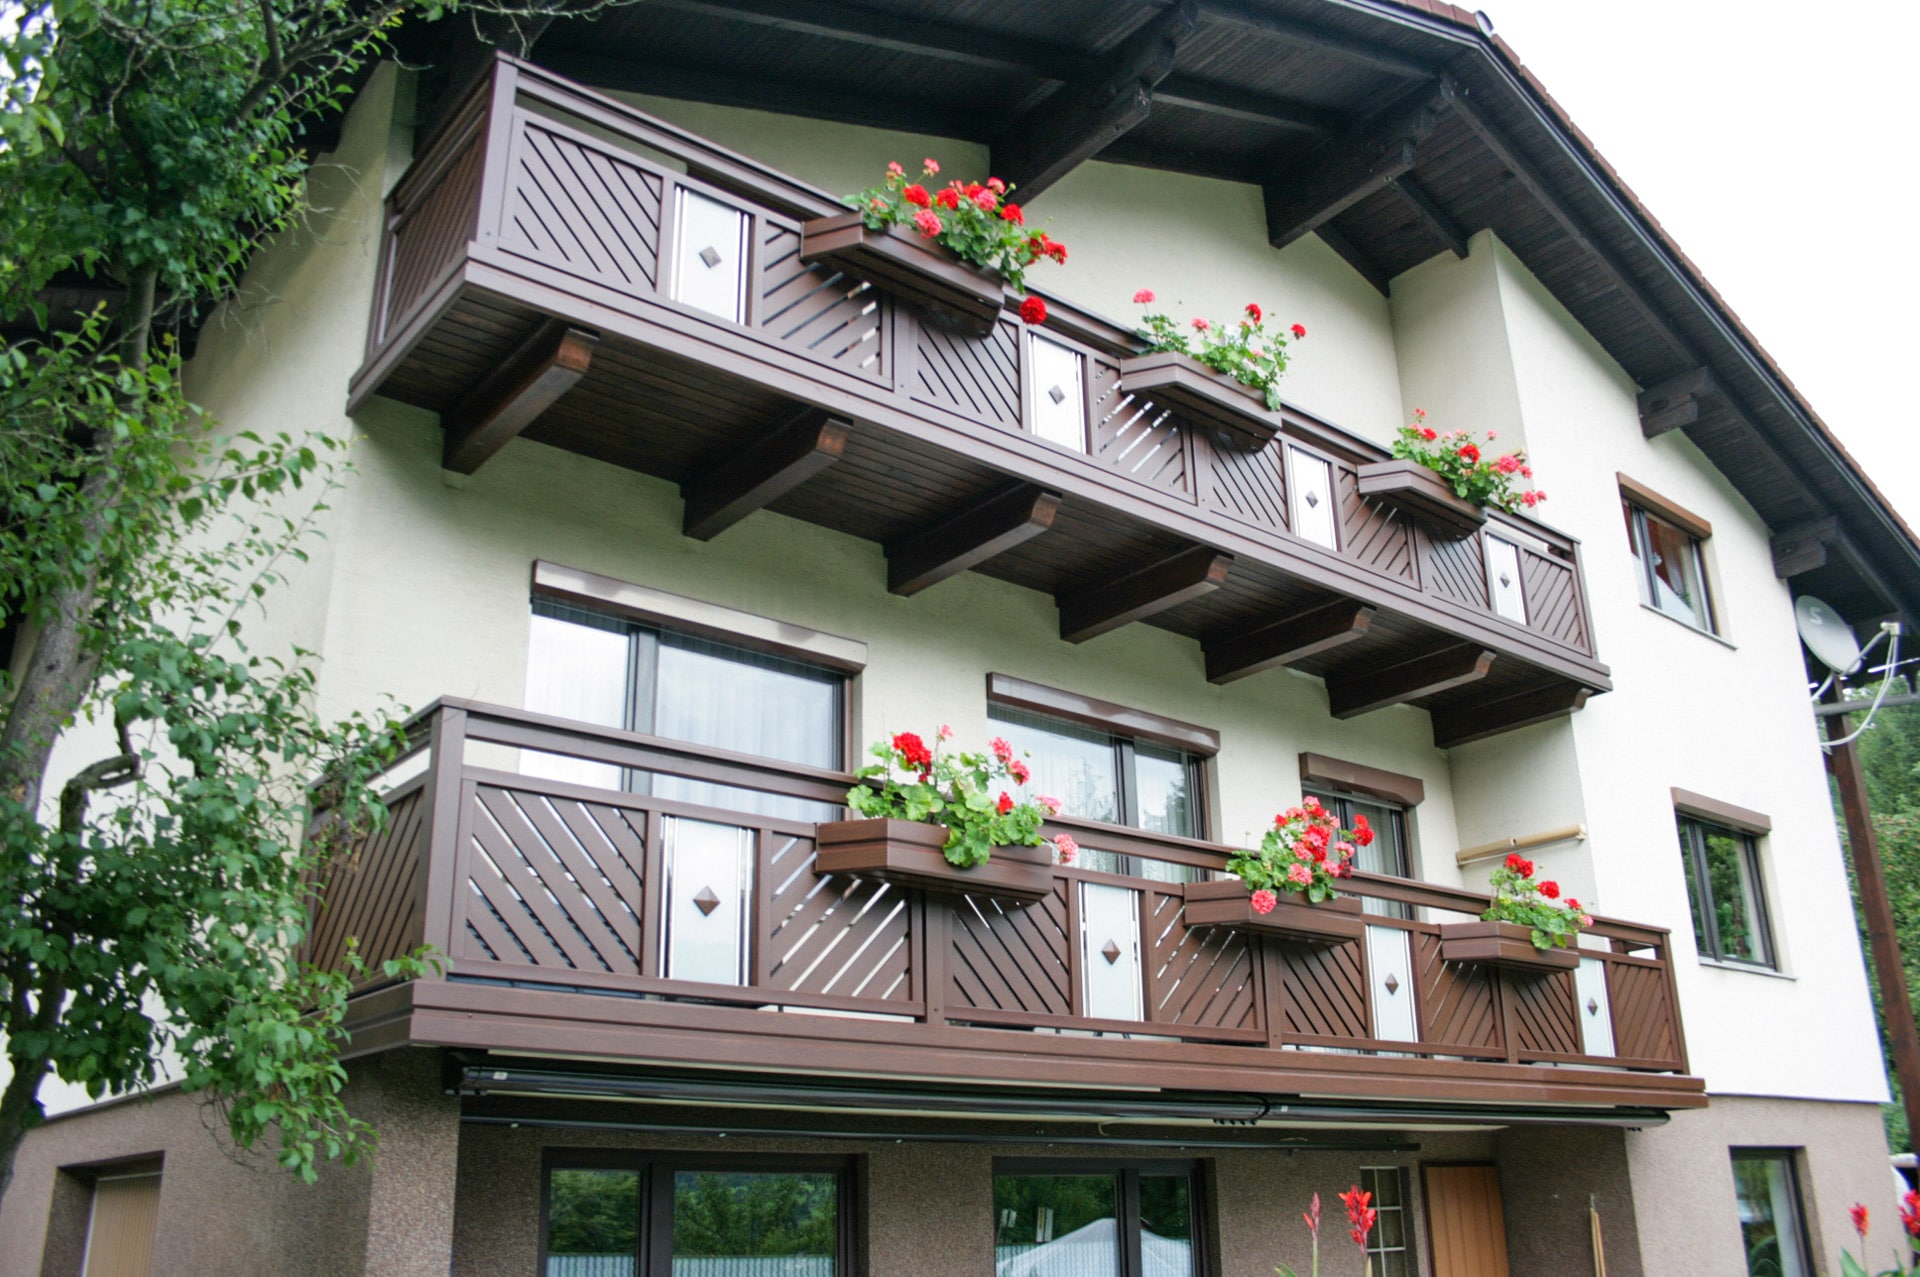 Wels 04 H b | Balkon Alugeländer, Wenge Holz-Struktur beschichtet, Glasdekor, Blumenkästen | Svoboda